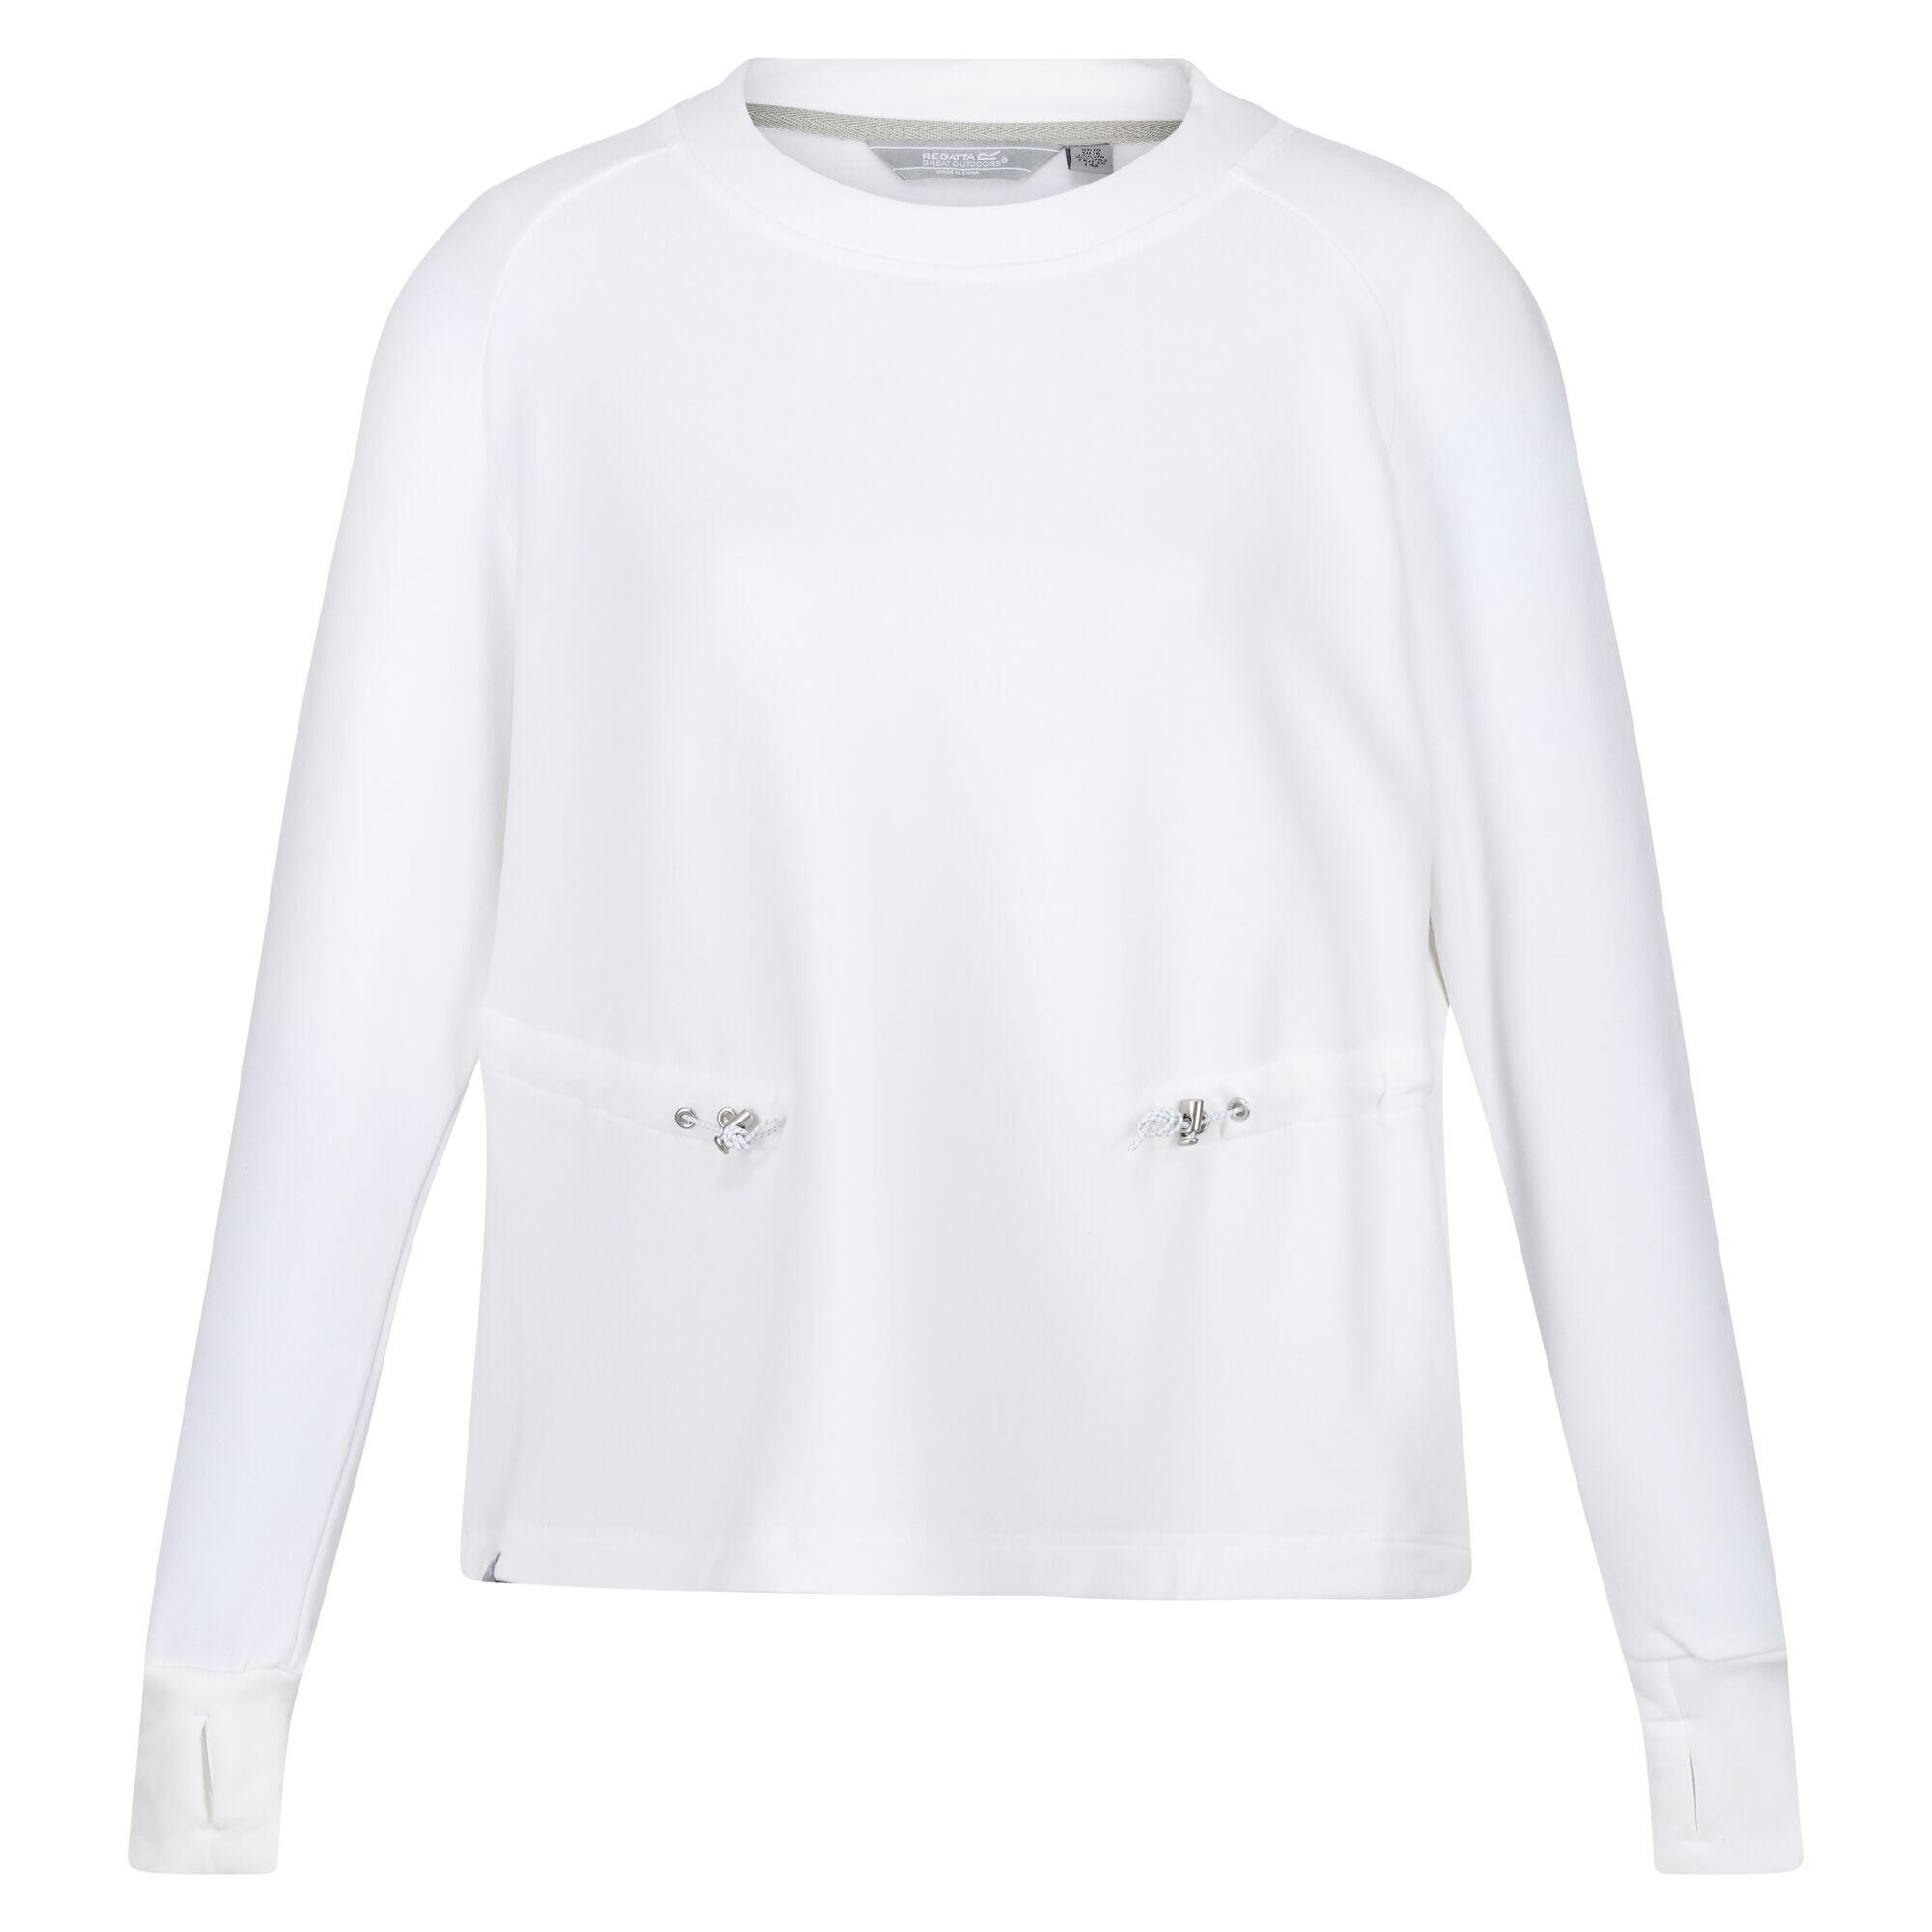 REGATTA Womens/Ladies Narine Marl Sweatshirt (White)